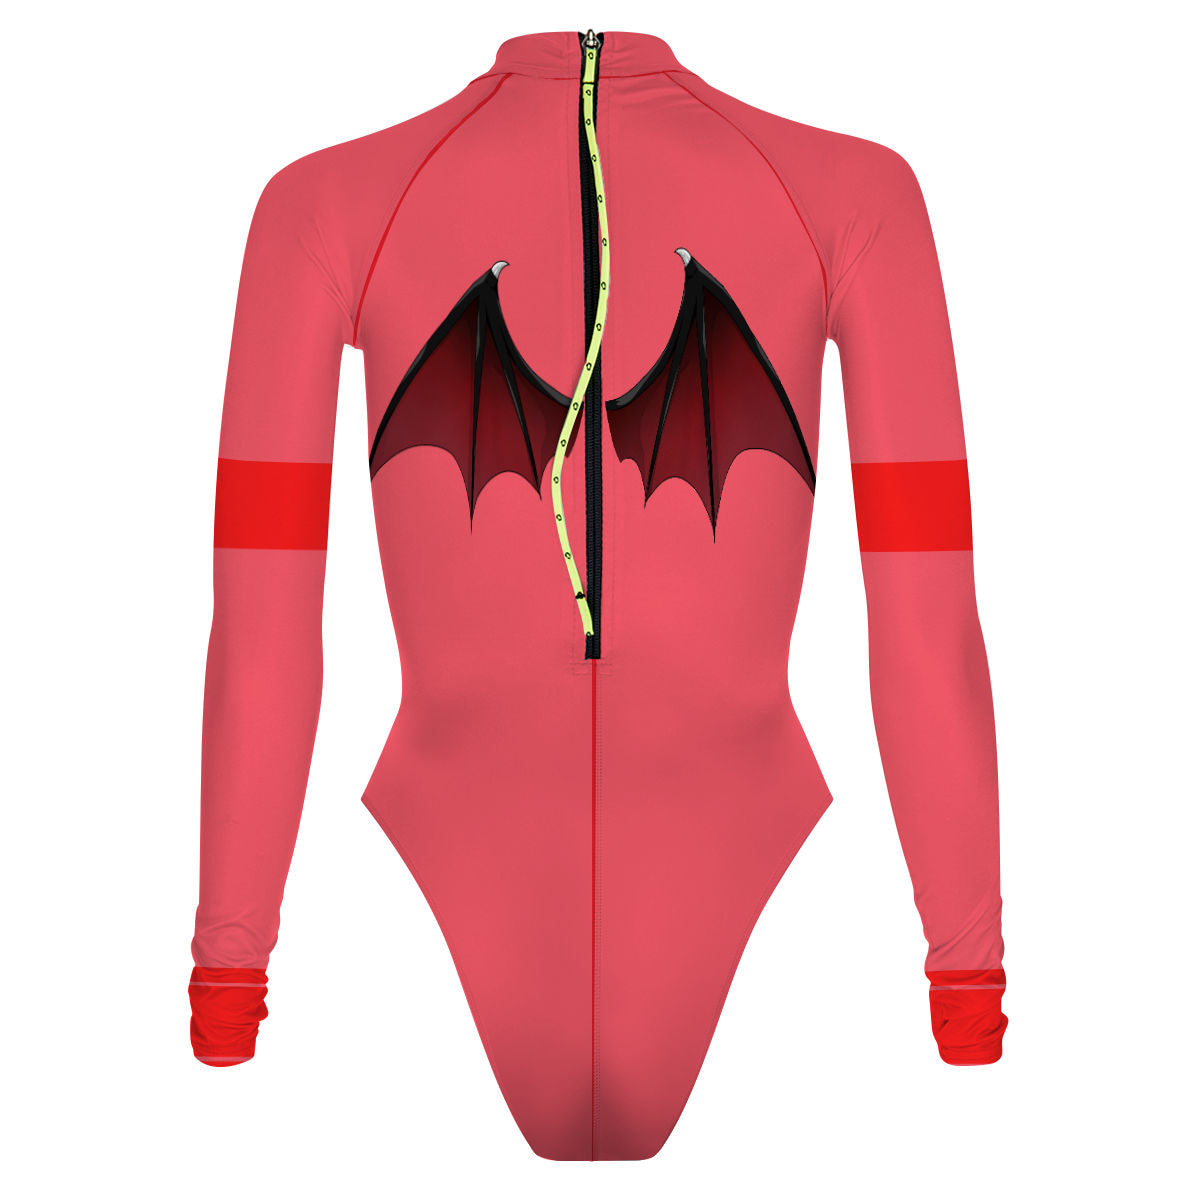 レミリア・スカーレット専用ハイレグサーフスーツ - Surf Swimming Suit Cheeky Cut